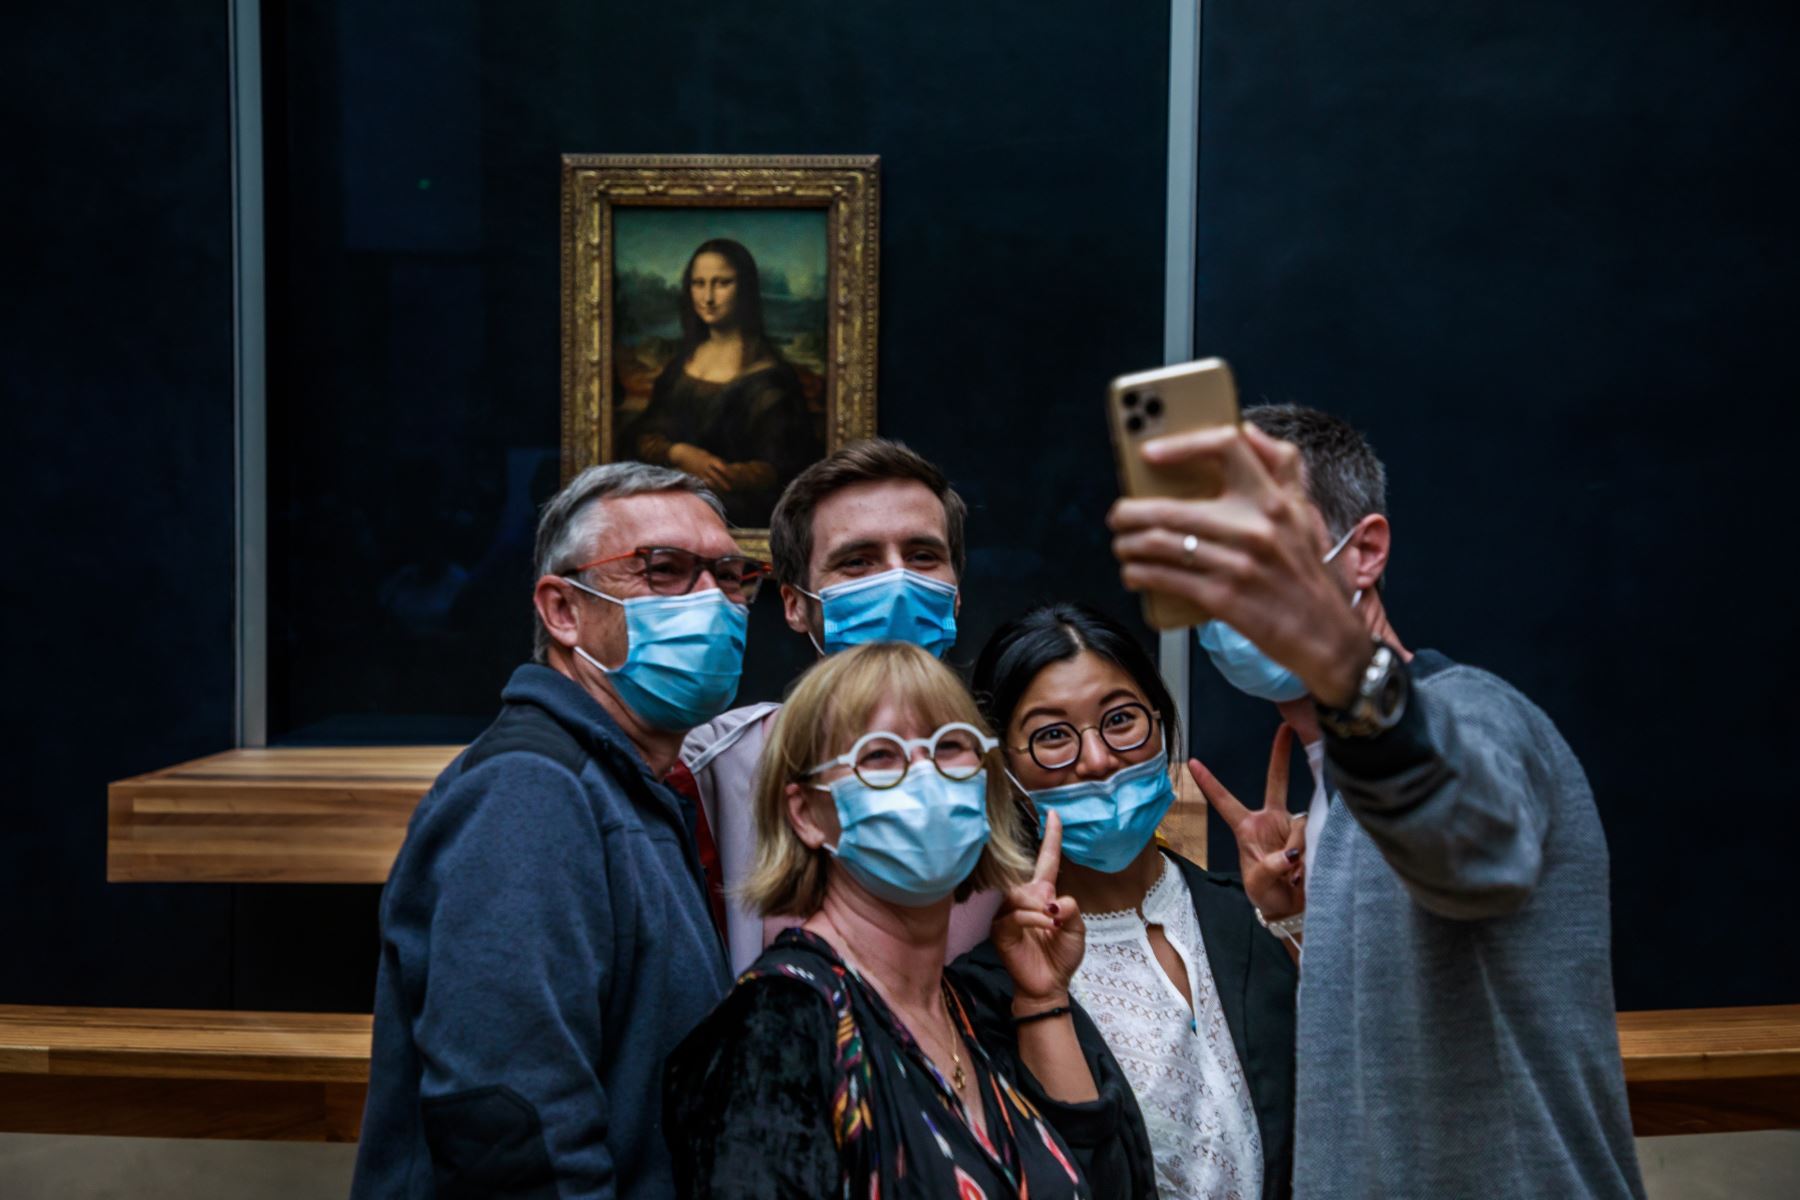 Los visitantes con mascarillas toman fotografías frente a la pintura de Leonardo da Vinci La Gioconda (Mona Lisa), en el Museo del Louvre en París, Francia. Foto: EFE